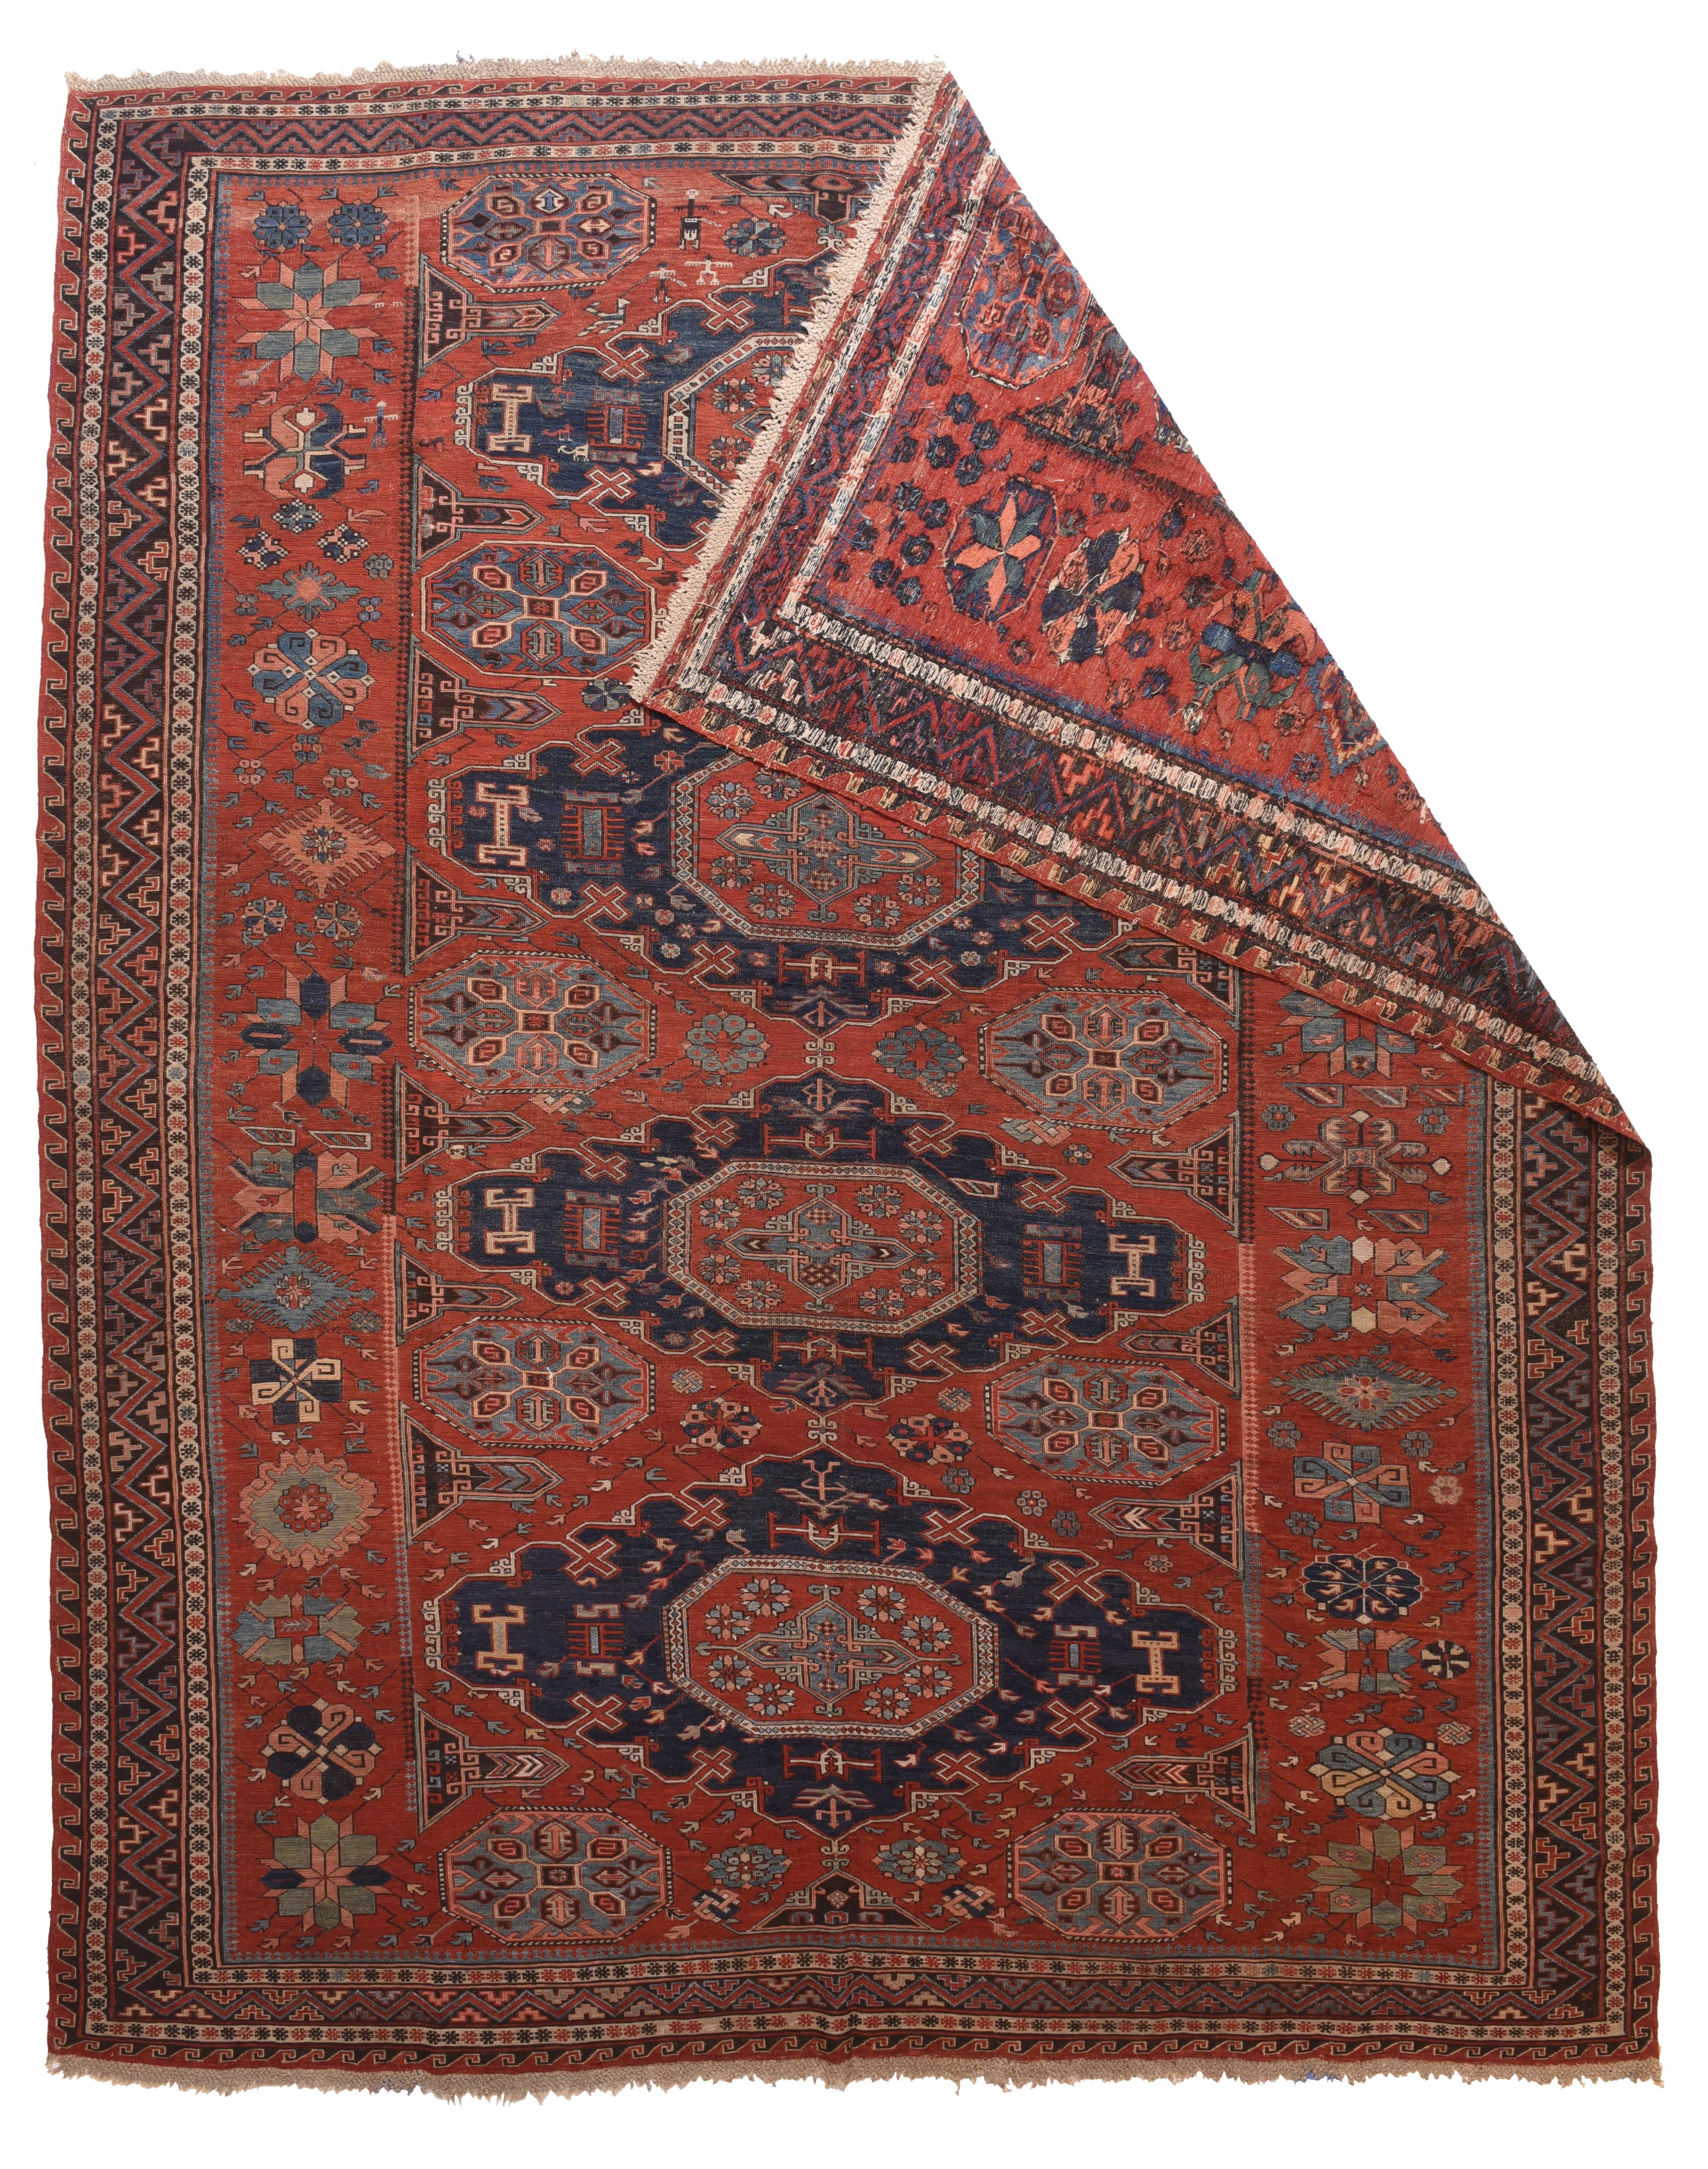 Le soumak (également orthographié Soumakh, Sumak, Sumac ou Soumac) est une technique de tapisserie consistant à tisser des textiles solides et décoratifs utilisés comme tapis et sacs domestiques. Les baks utilisés pour la literie sont connus sous le